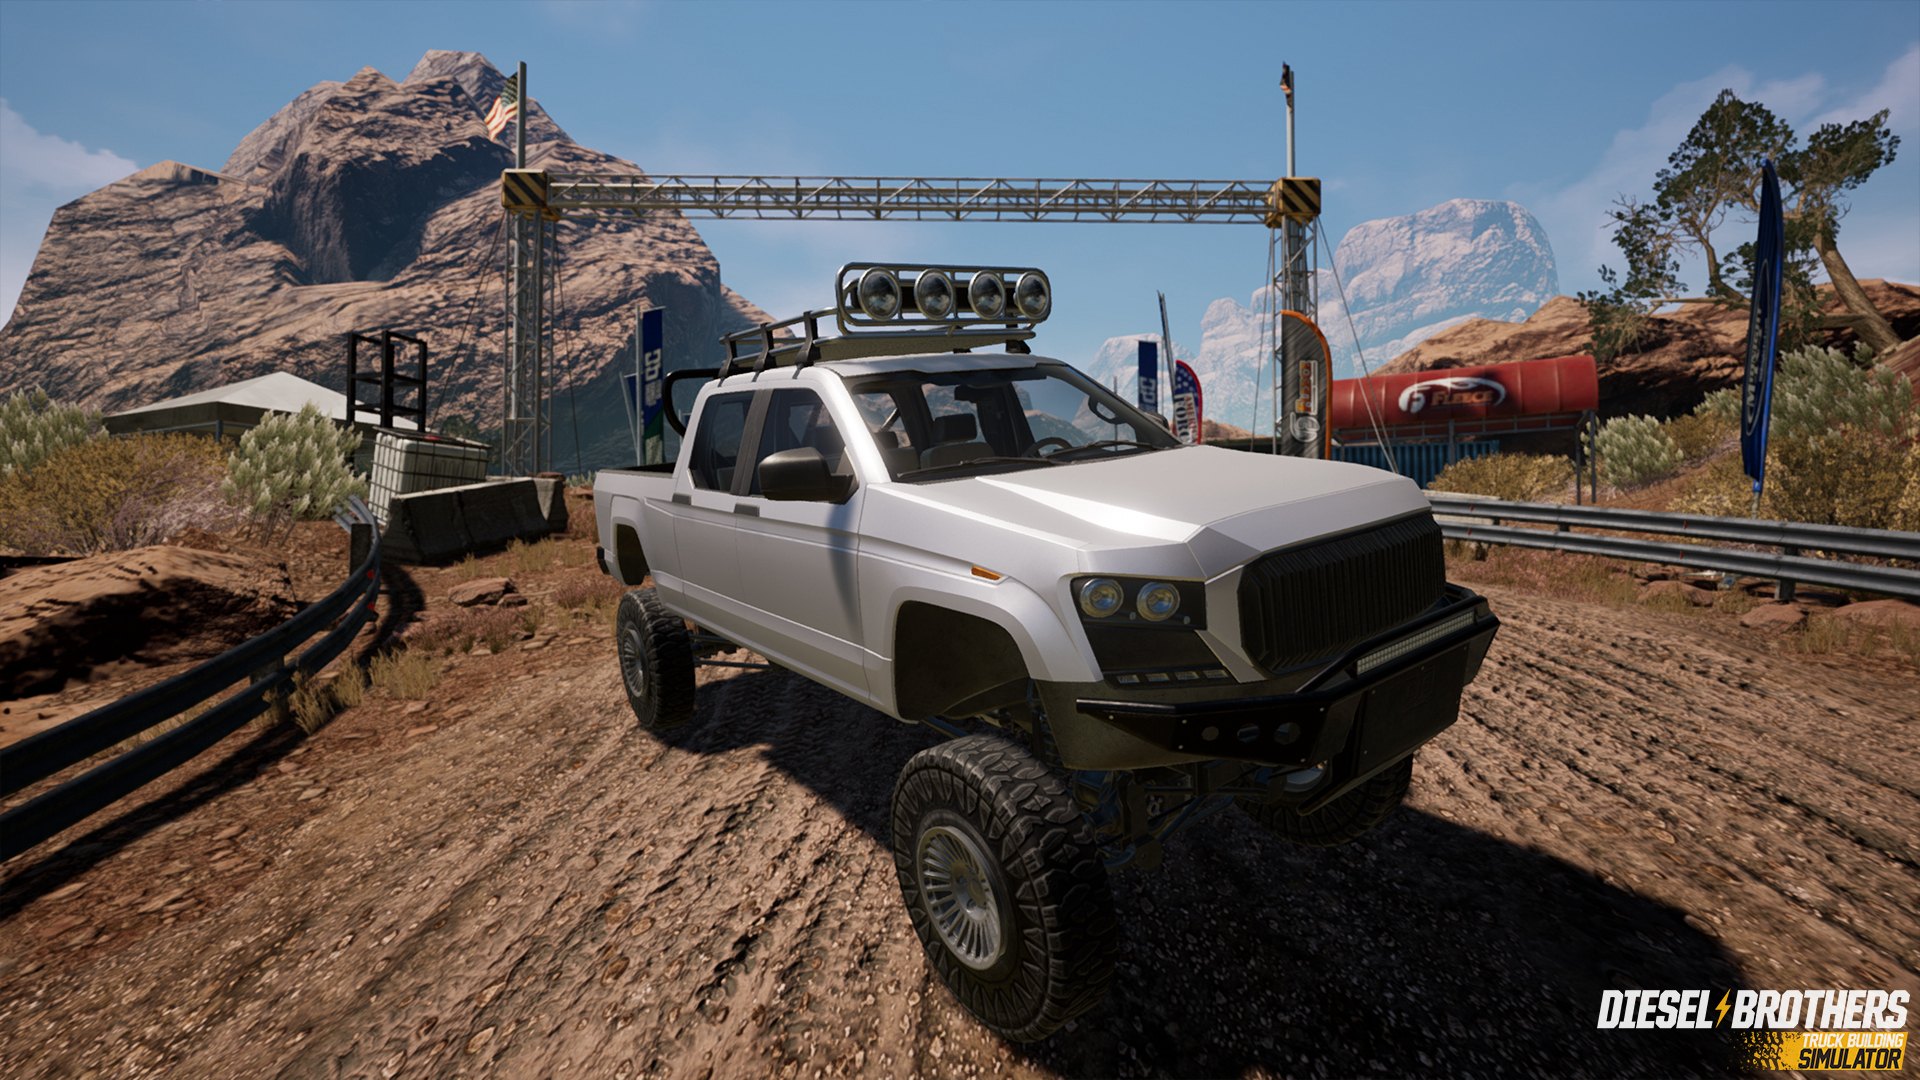 Diesel Brothers: Truck Building Simulator EU Steam CD Key